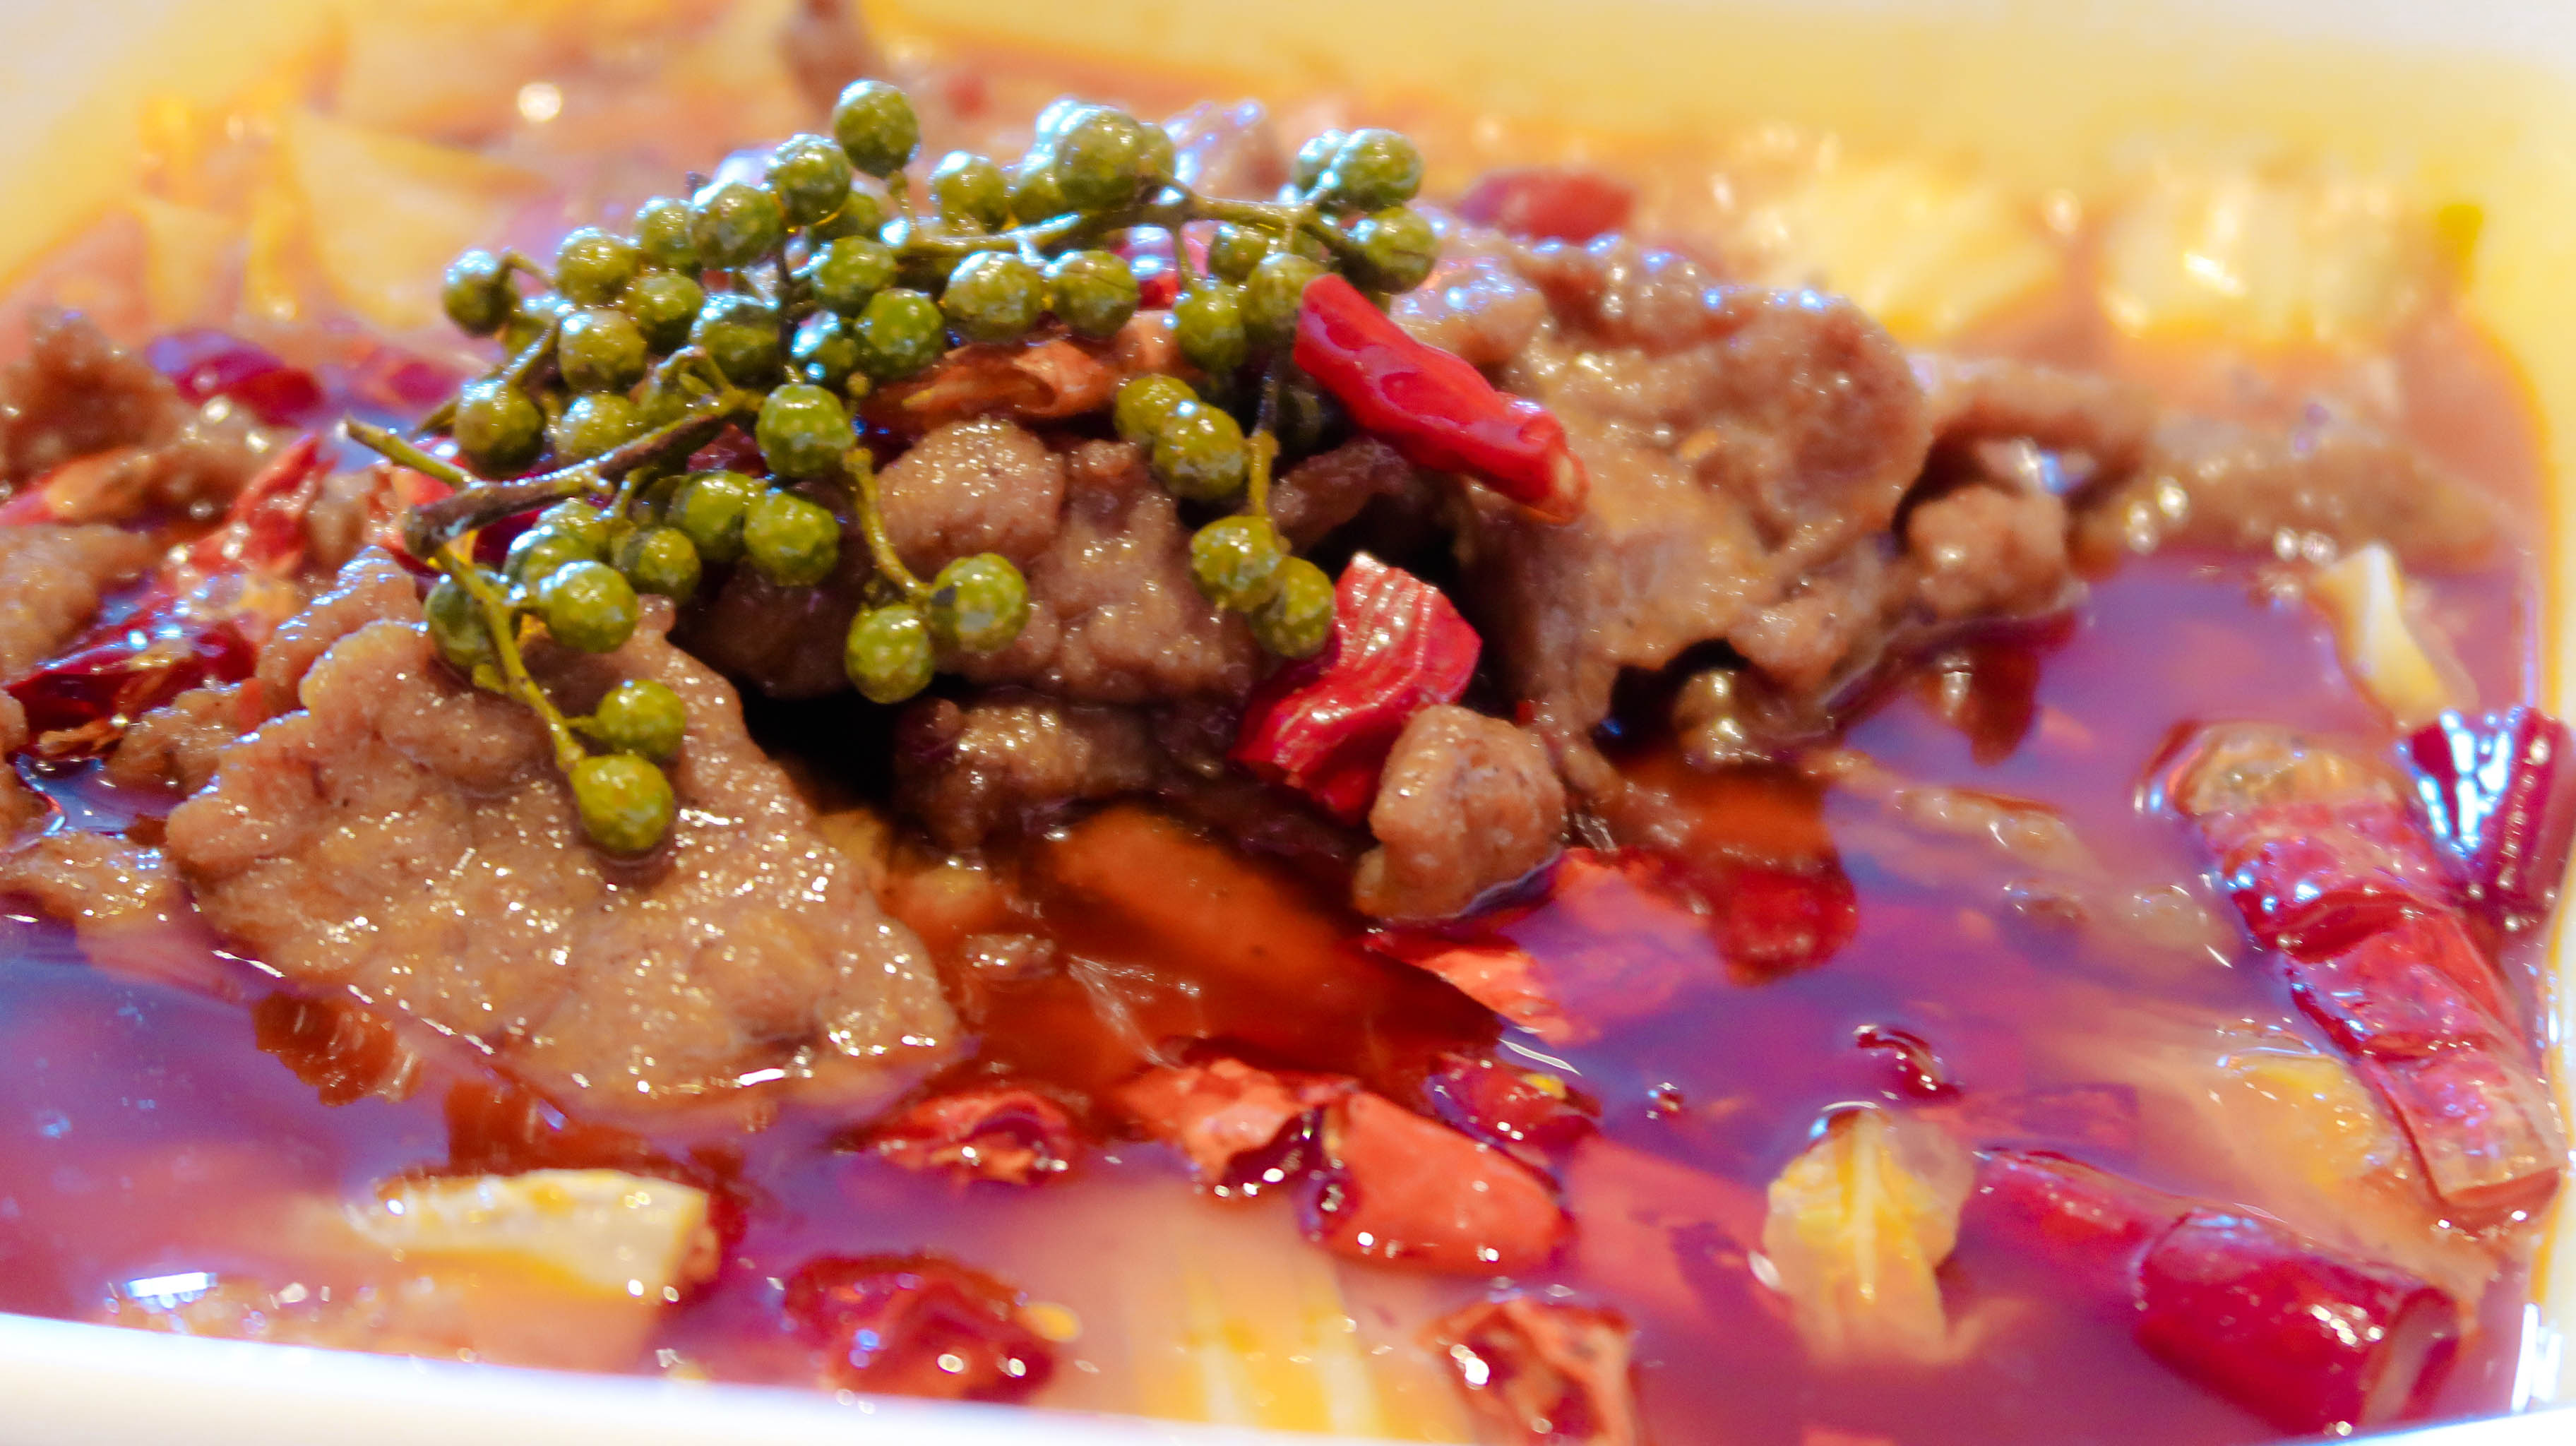 水煮牛肉,麻与辣控制得当,很适合广东人的口味